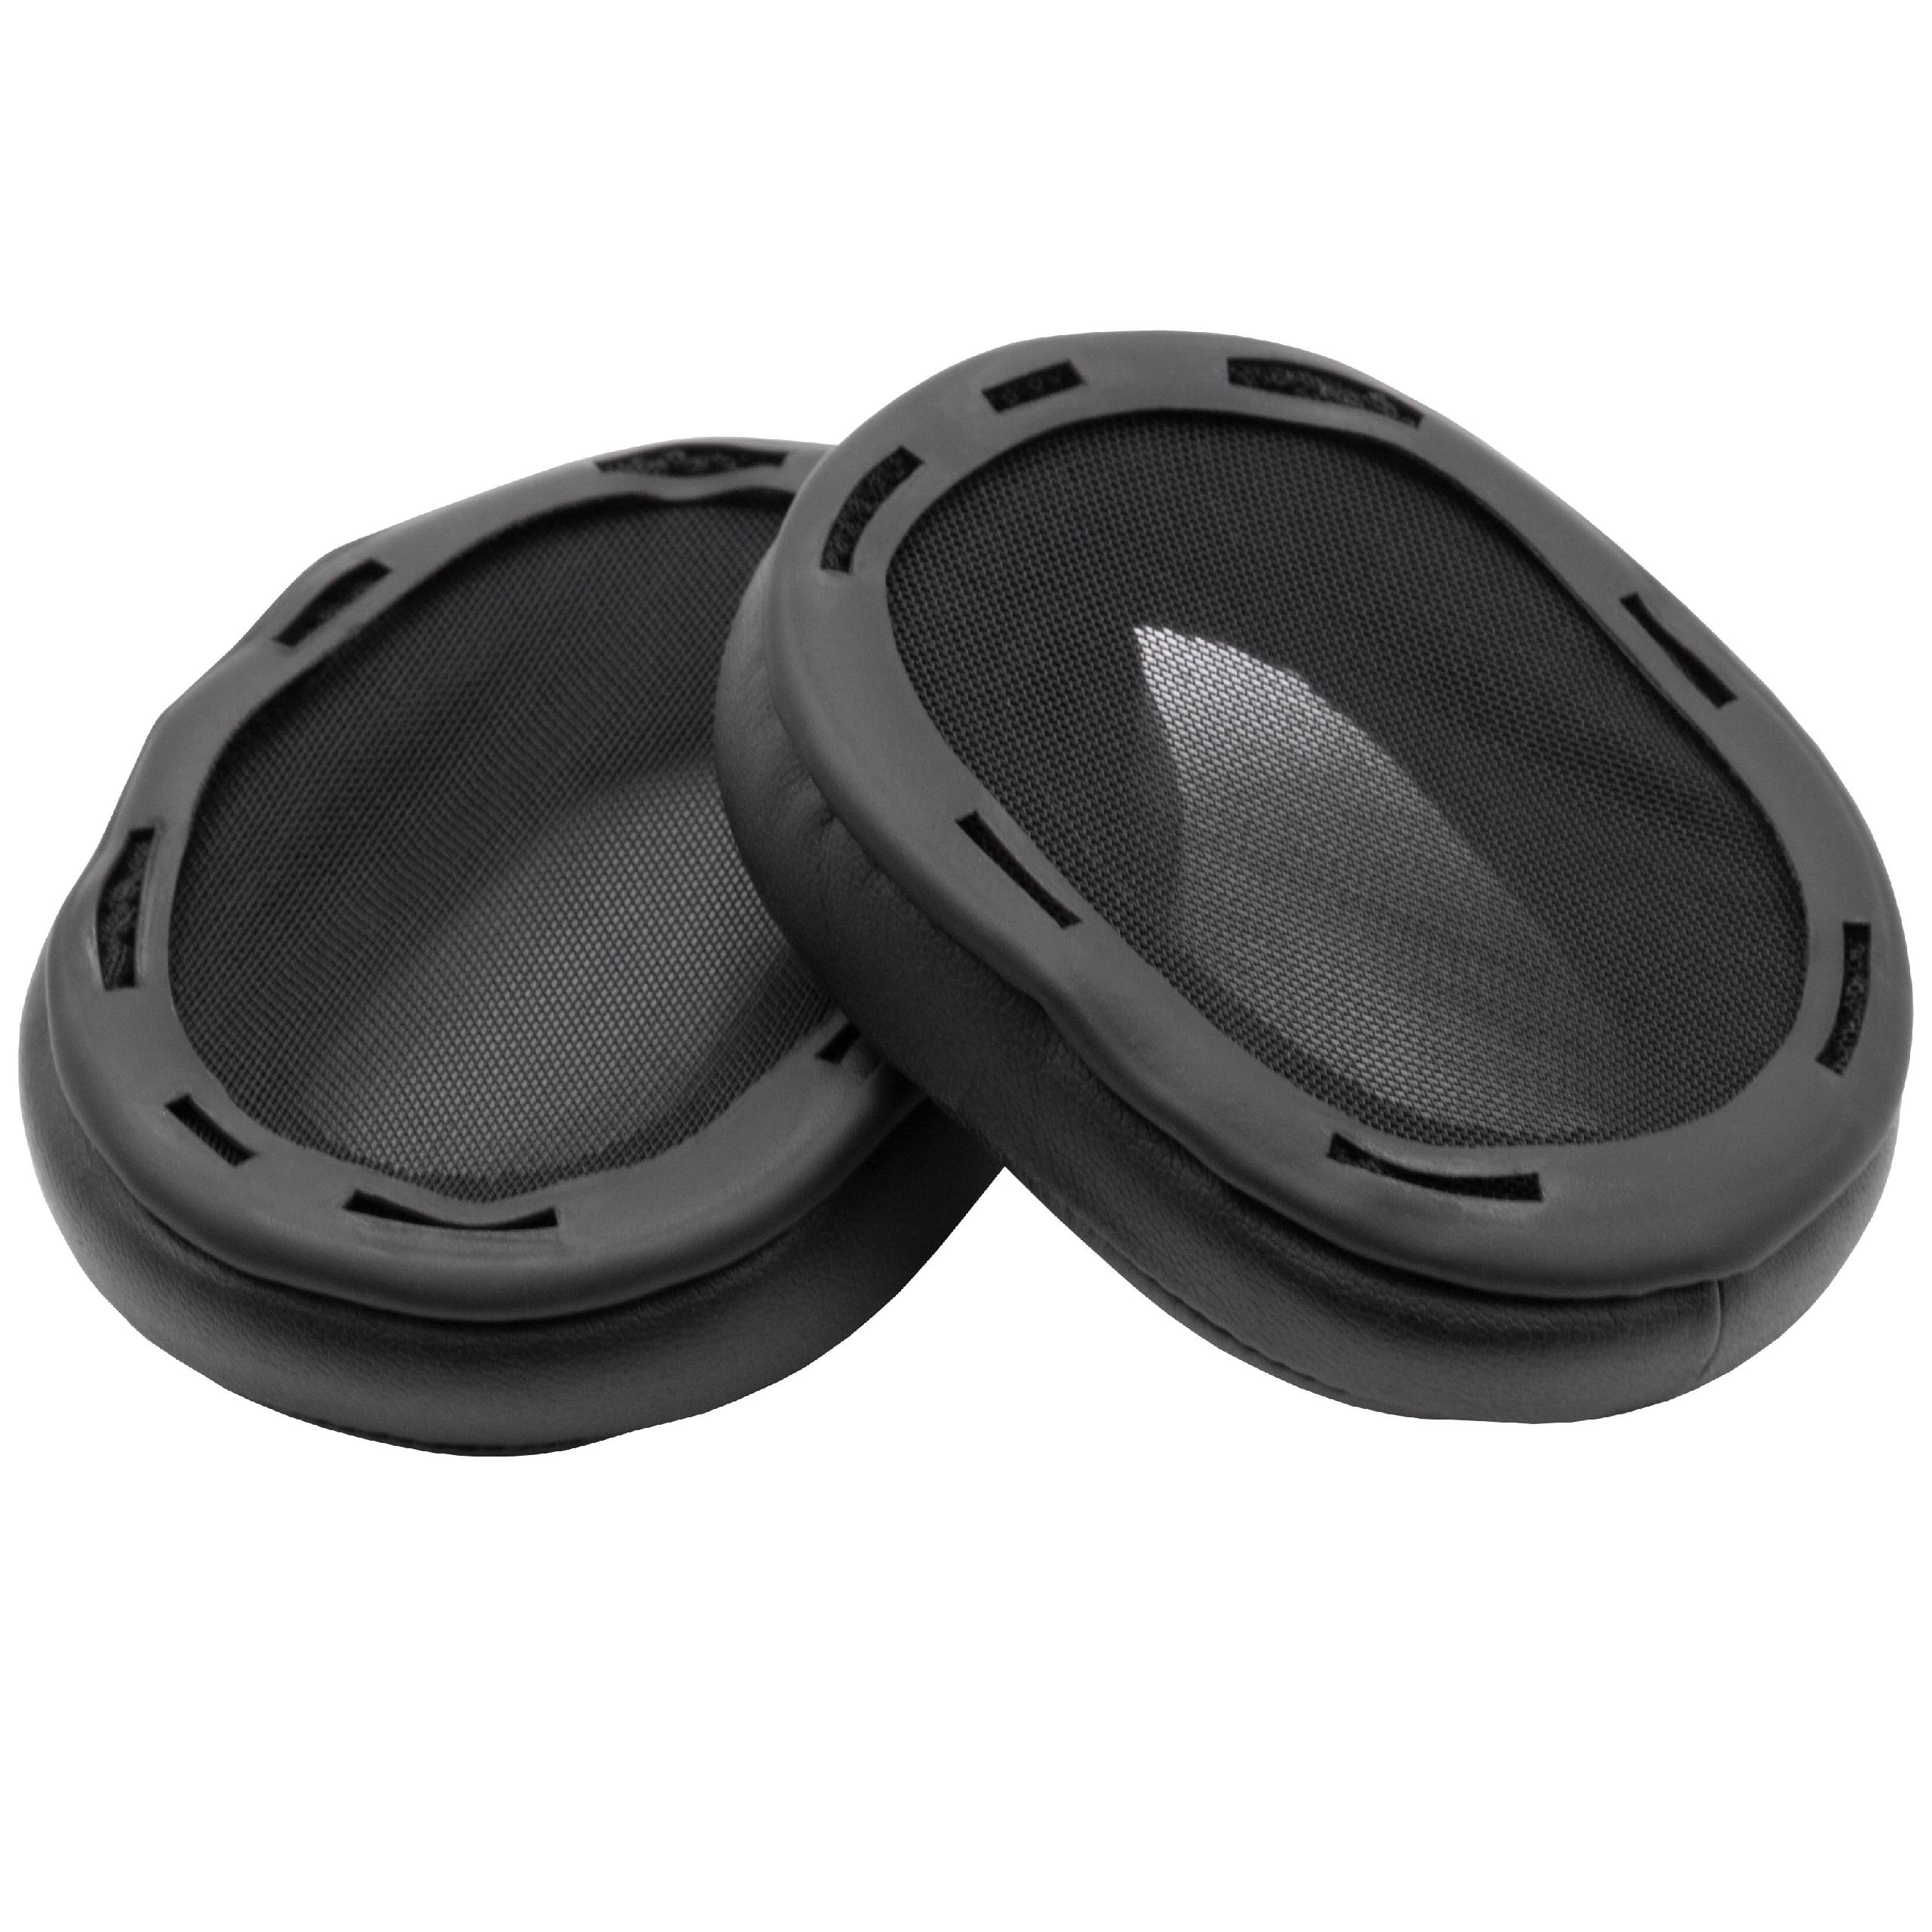 Coussinets d'oreille pour casque Sony MDR-1R - polyuréthane / mousse noir